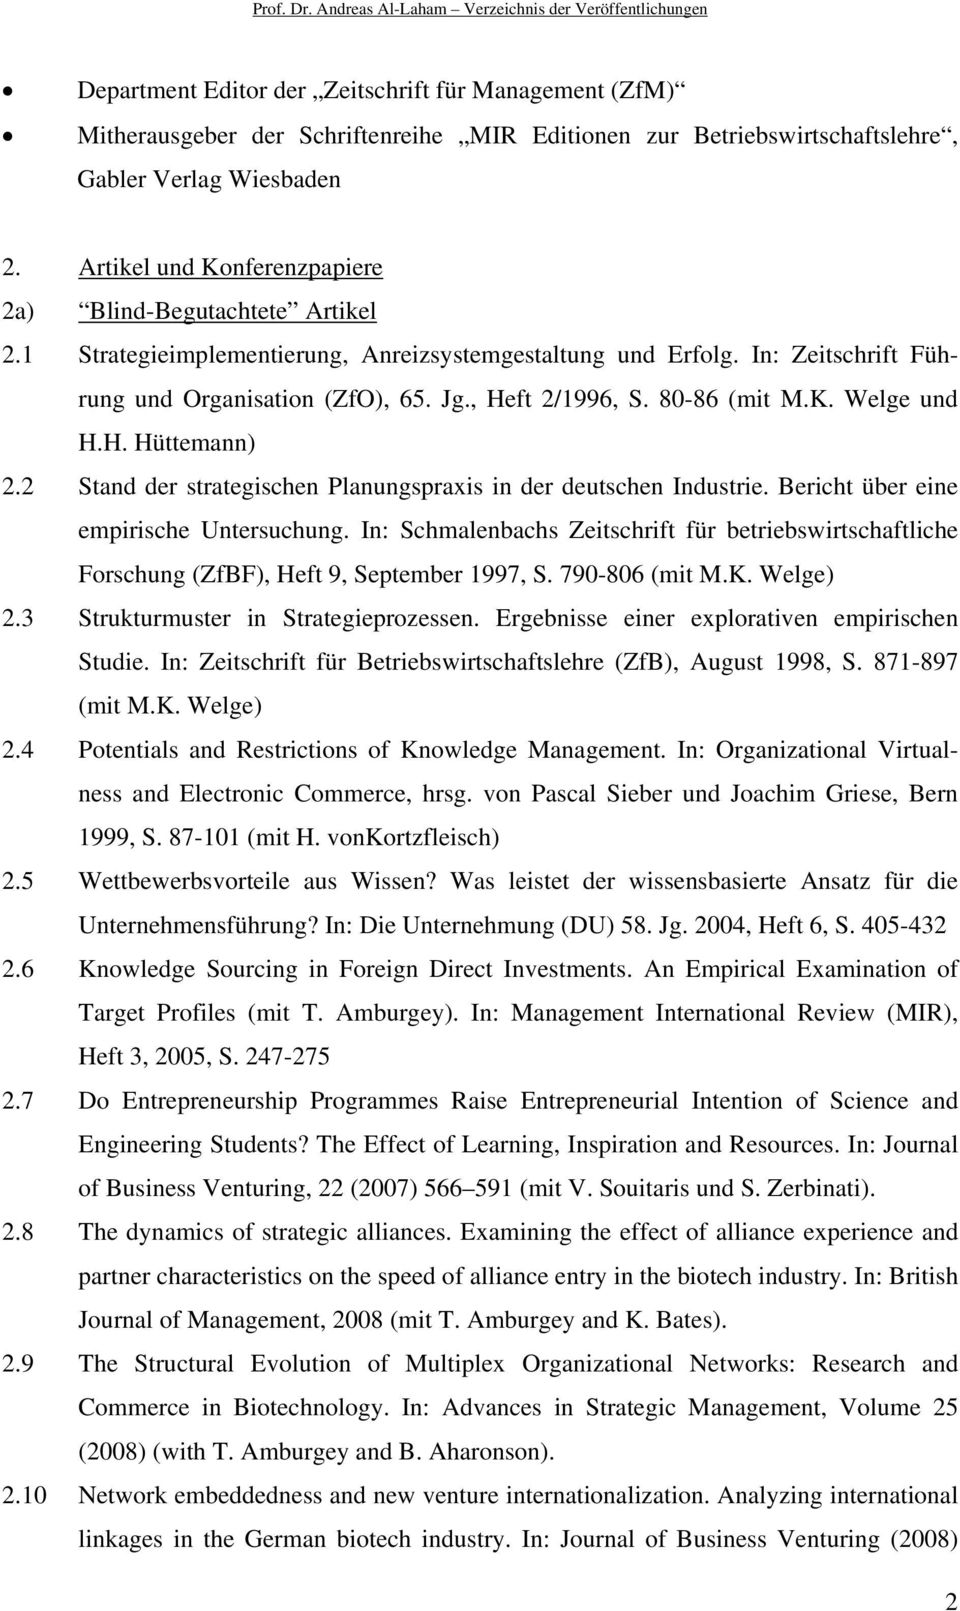 80-86 (mit M.K. Welge und H.H. Hüttemann) 2.2 Stand der strategischen Planungspraxis in der deutschen Industrie. Bericht über eine empirische Untersuchung.